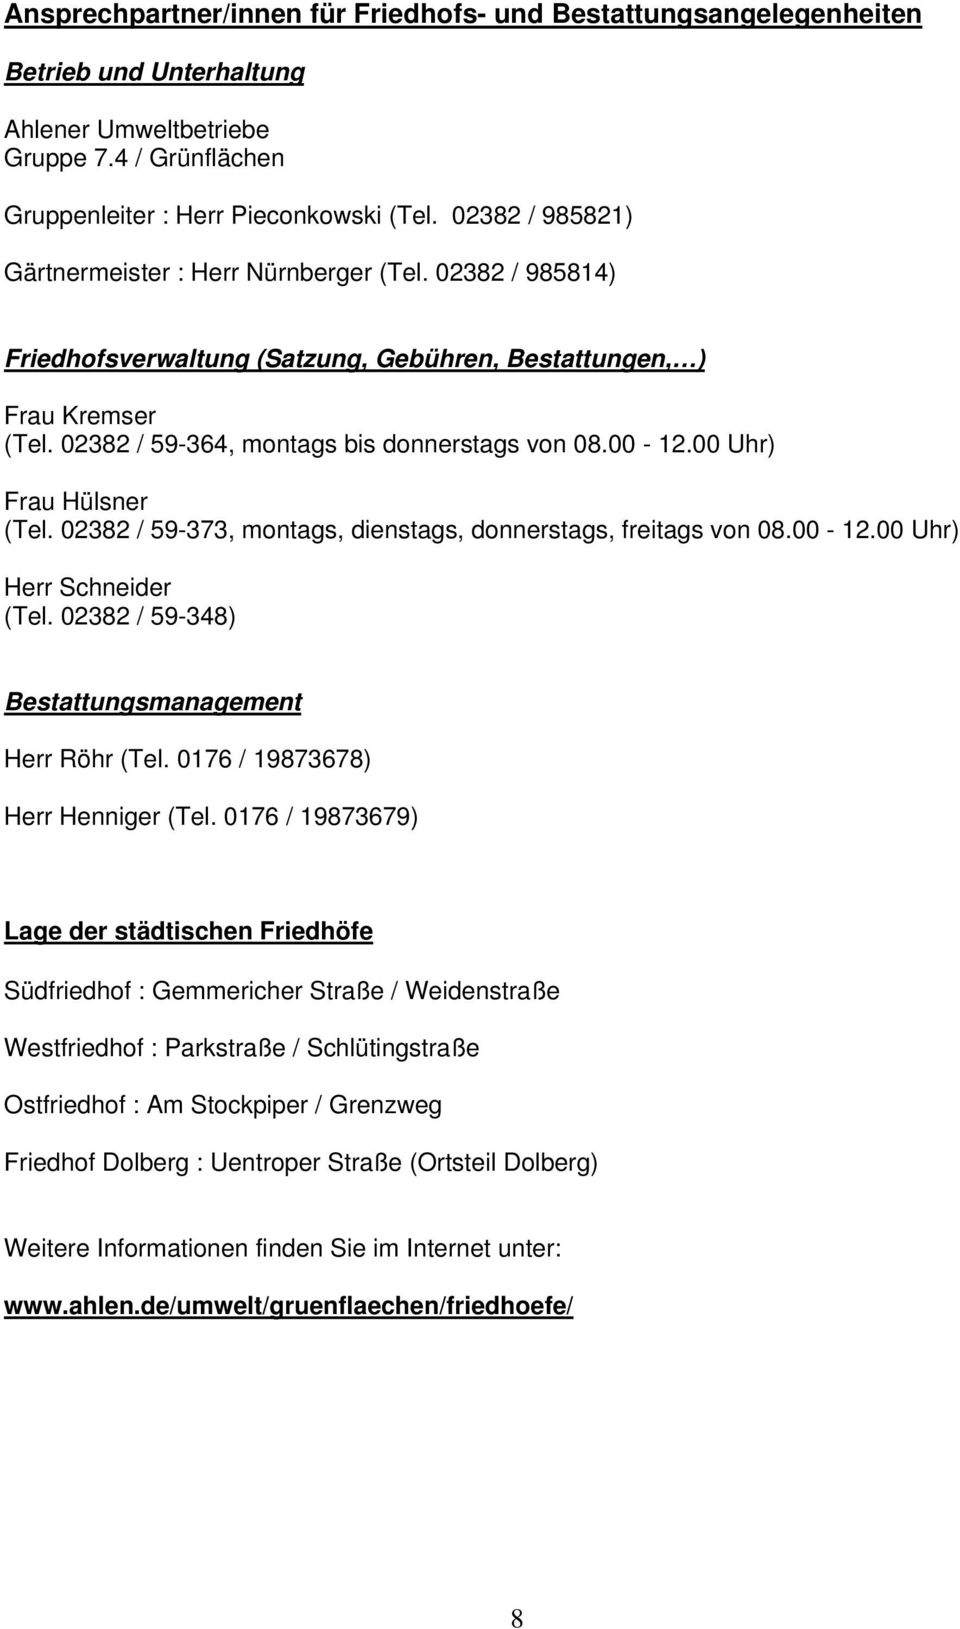 00 Uhr) Frau Hülsner (Tel. 02382 / 59-373, montags, dienstags, donnerstags, freitags von 08.00-12.00 Uhr) Herr Schneider (Tel. 02382 / 59-348) Bestattungsmanagement Herr Röhr (Tel.